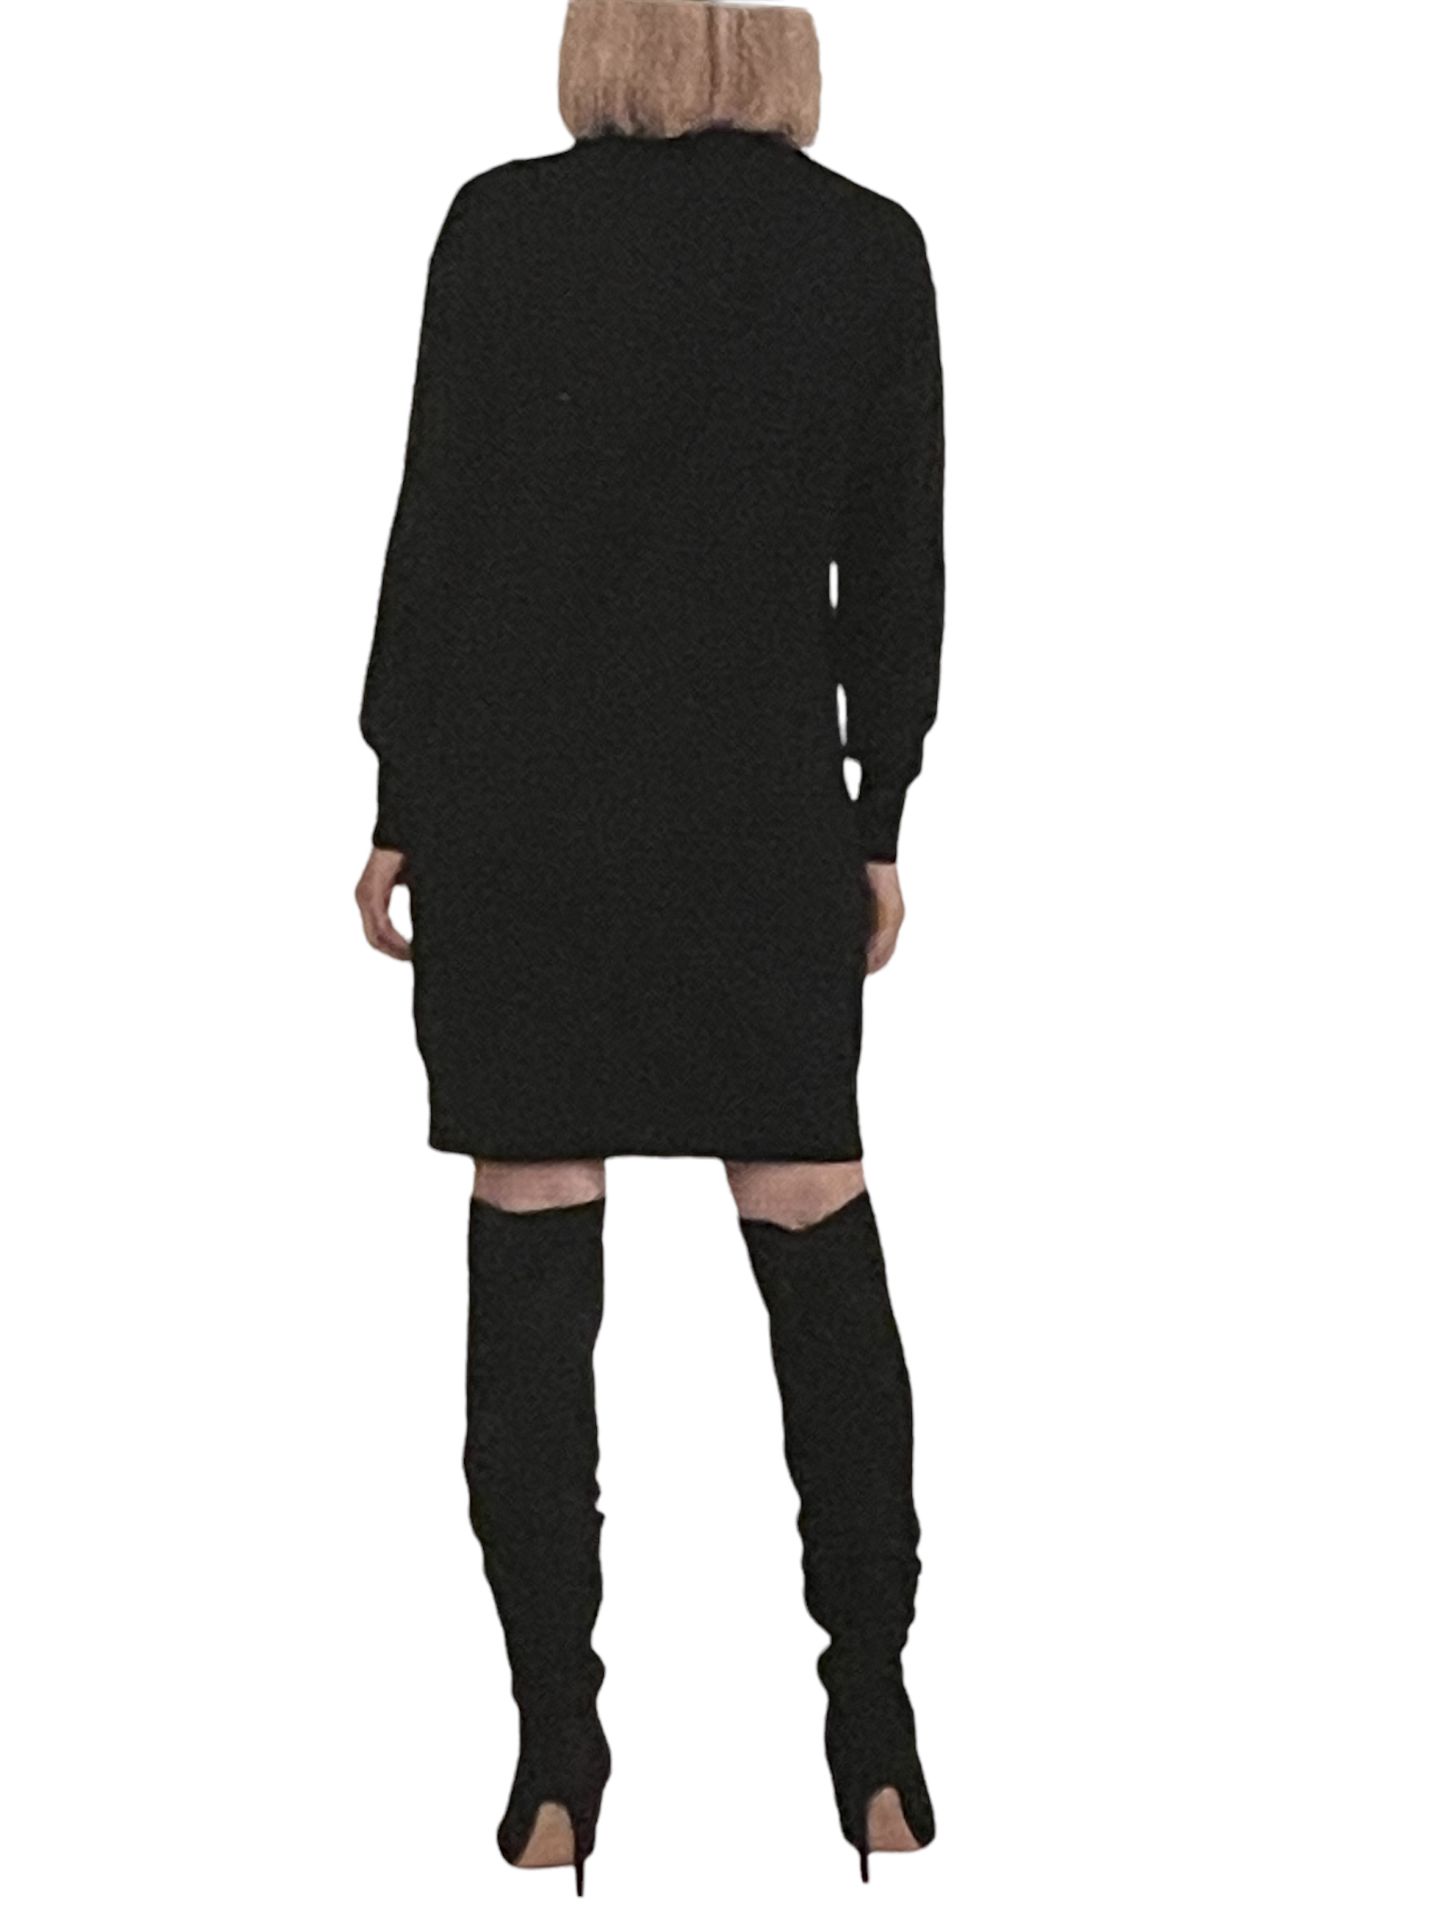 Designer Badgley Mischka Lightweight Fine Knitted Stretchy Jumper Dress UK 14 (L - Image 2 of 6